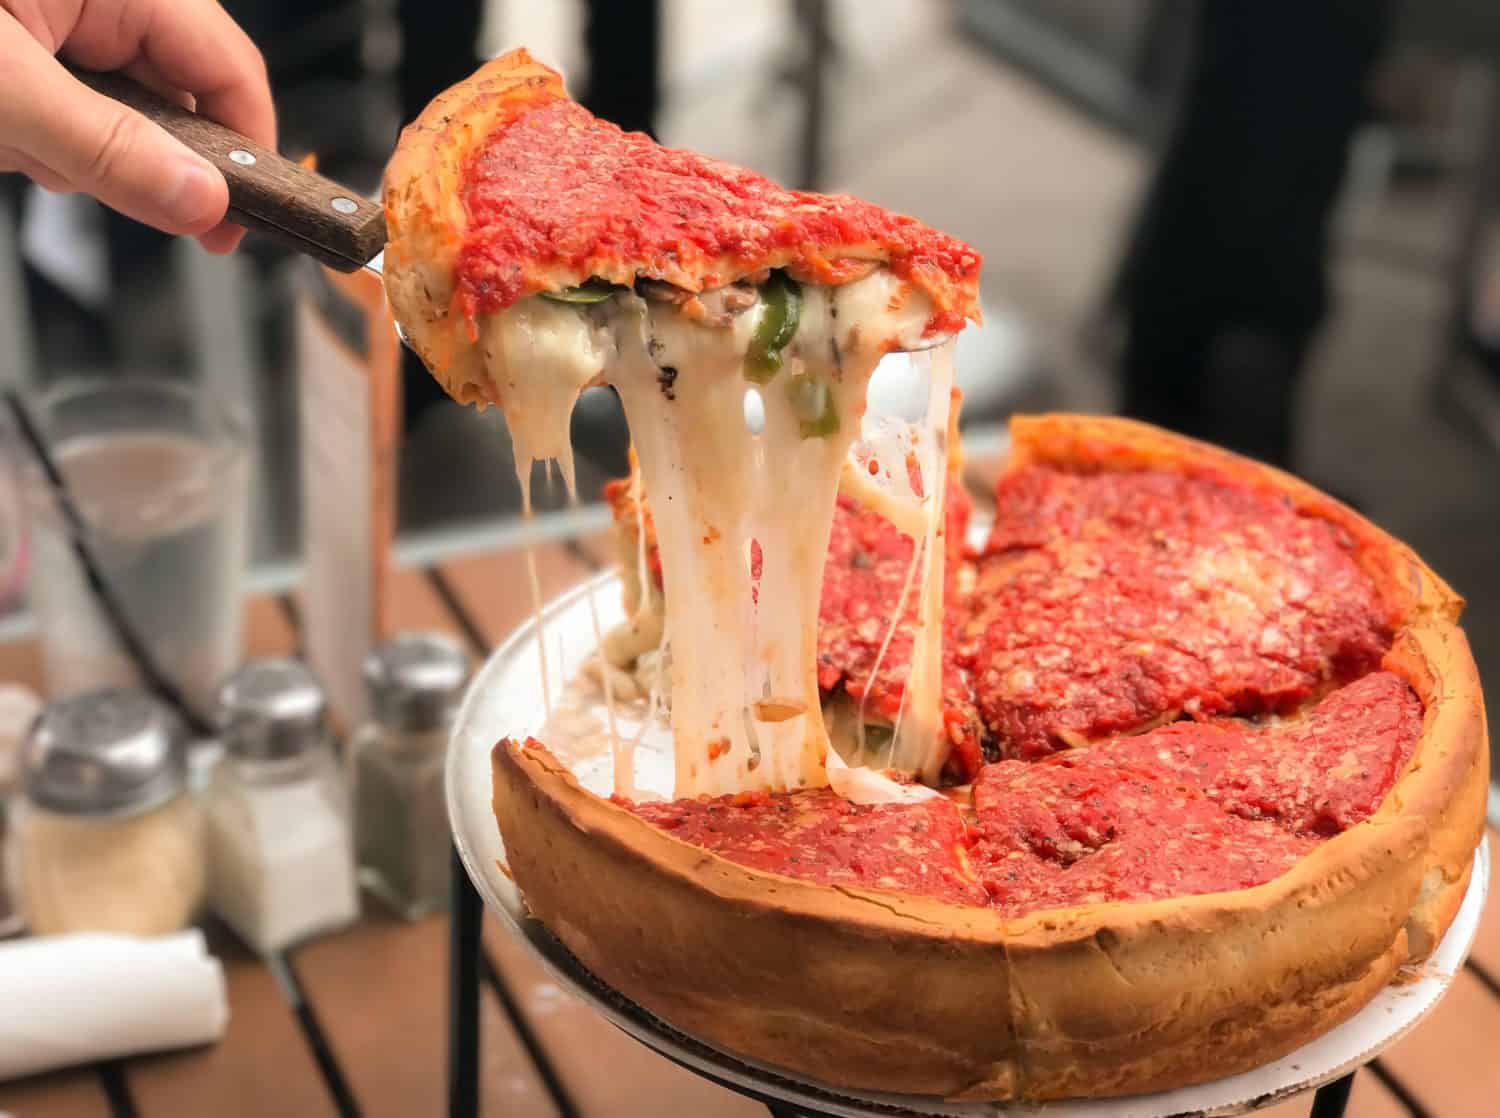 Pizza al formaggio, pizza italiana al formaggio profonda in stile Chicago con salsa di pomodoro.